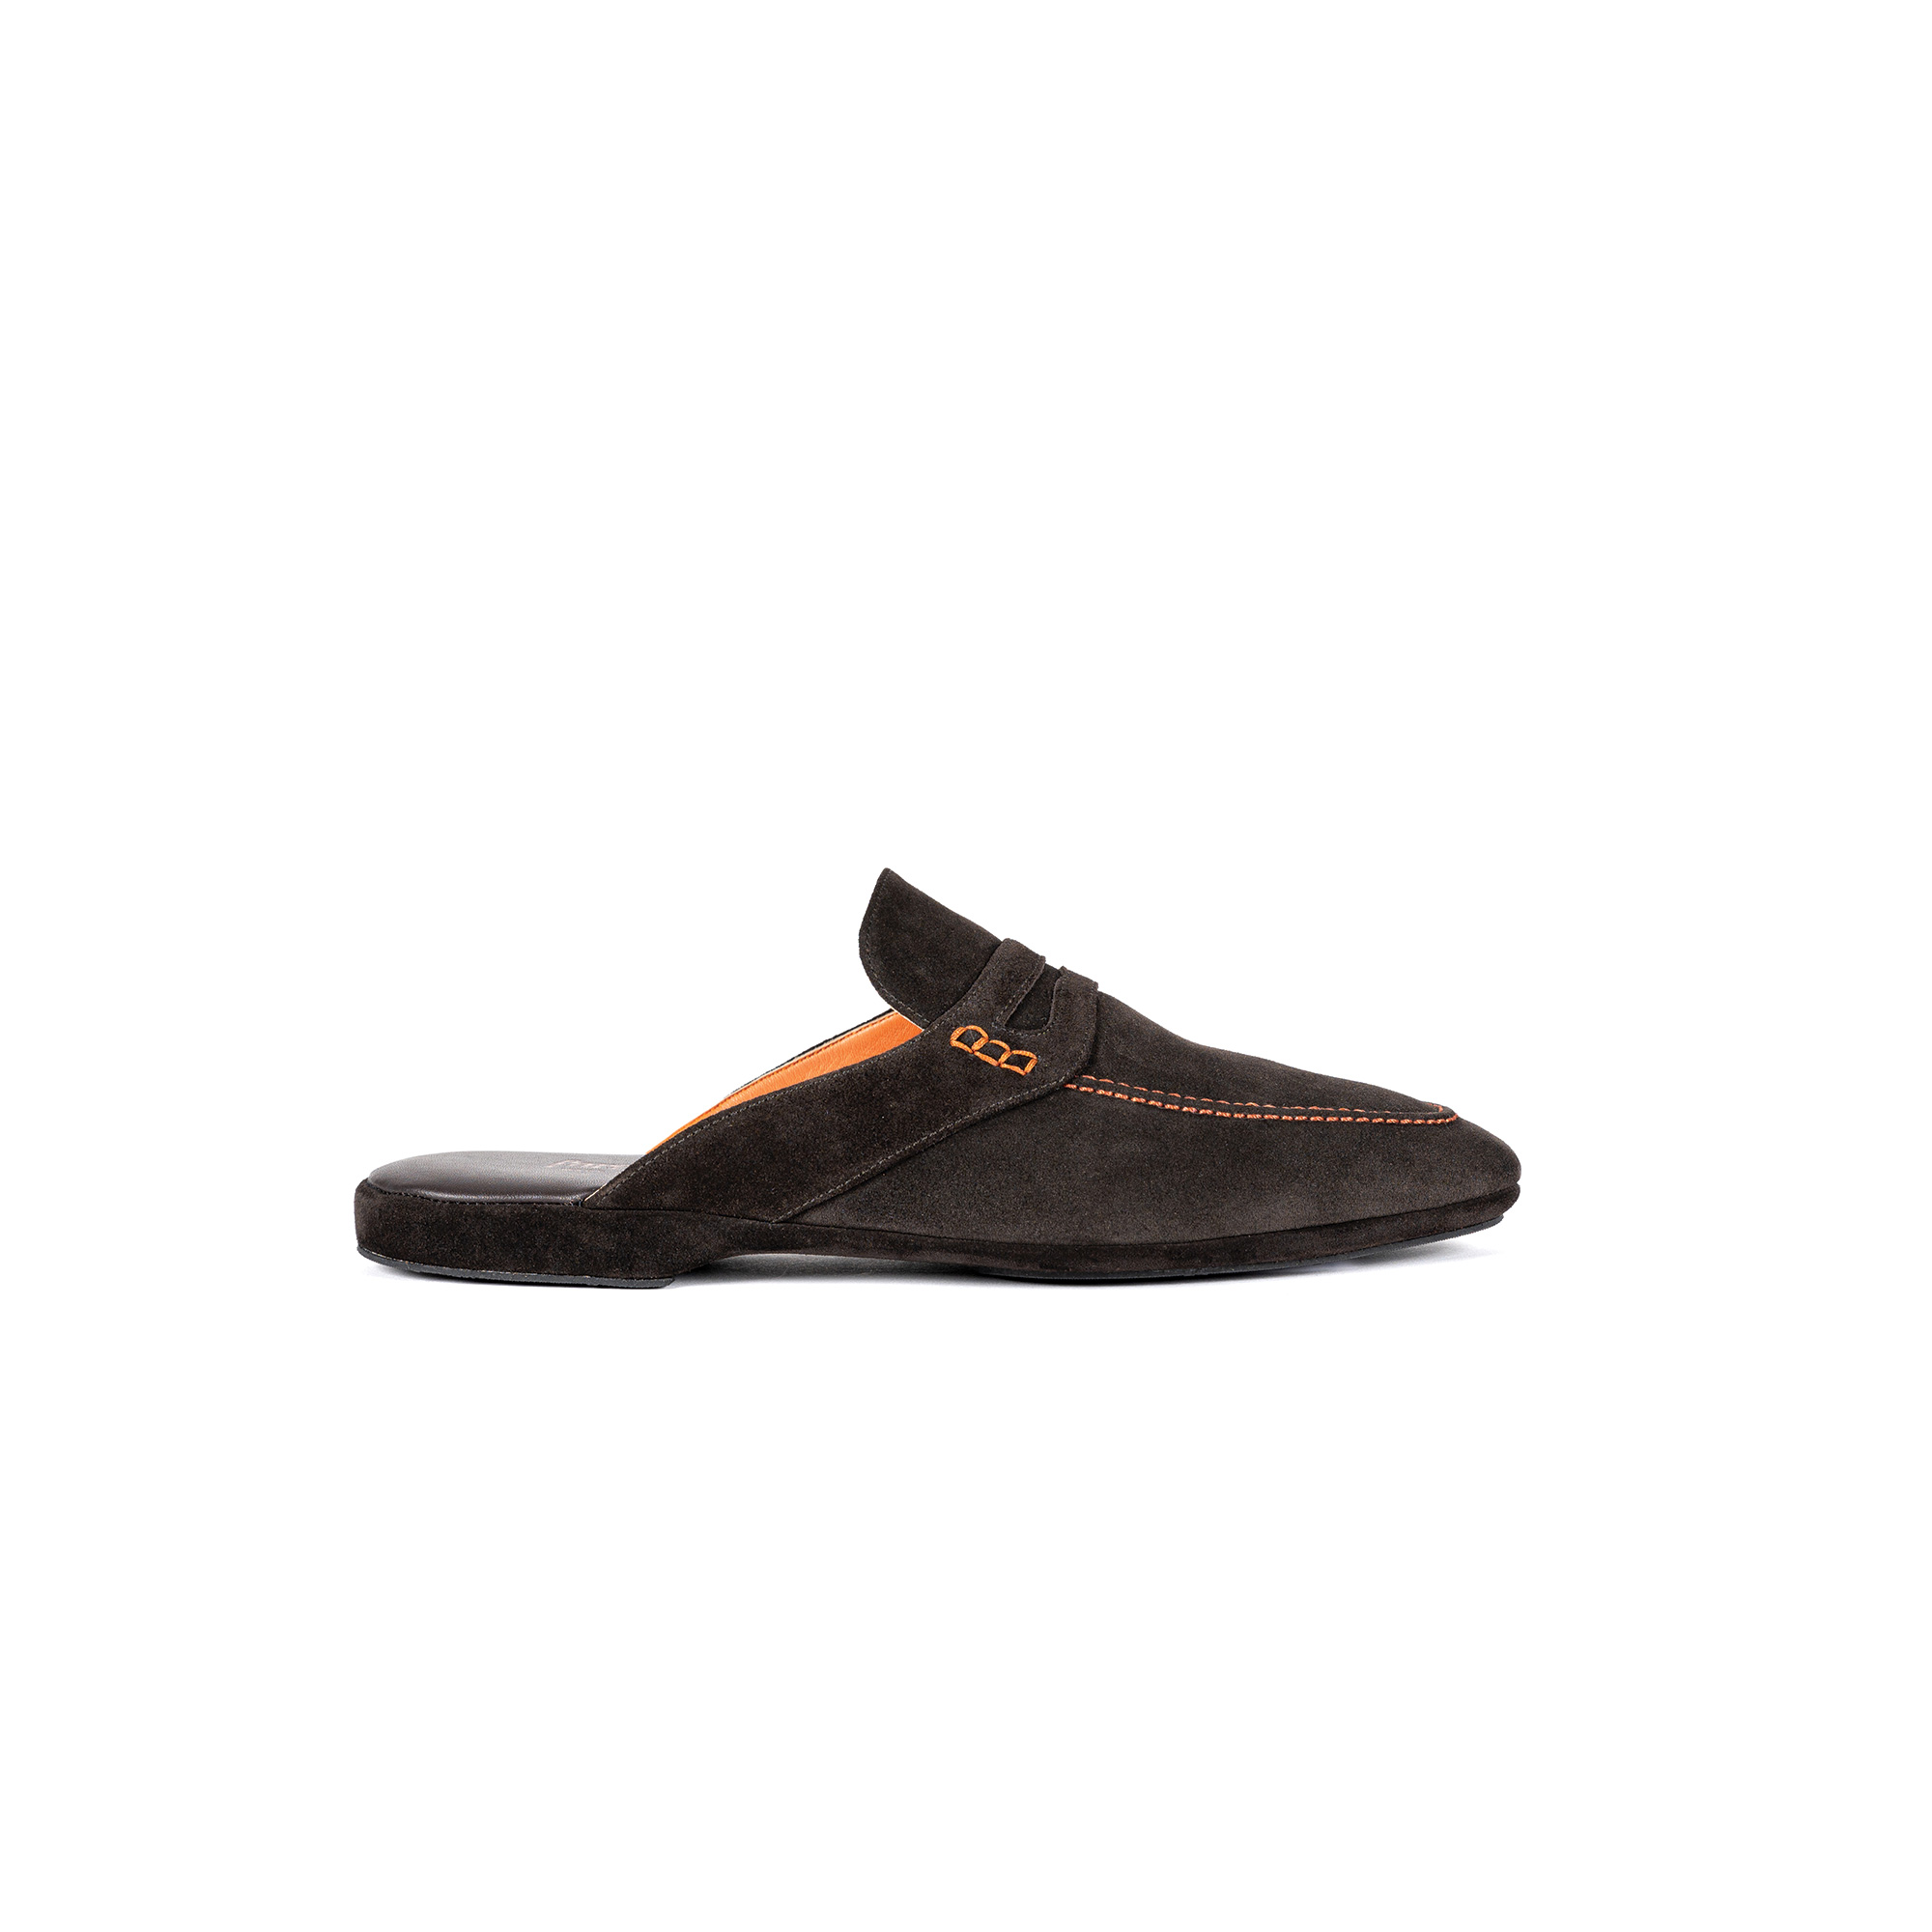 Pantofola interno classico aperta in velour pepe - Farfalla italian slippers